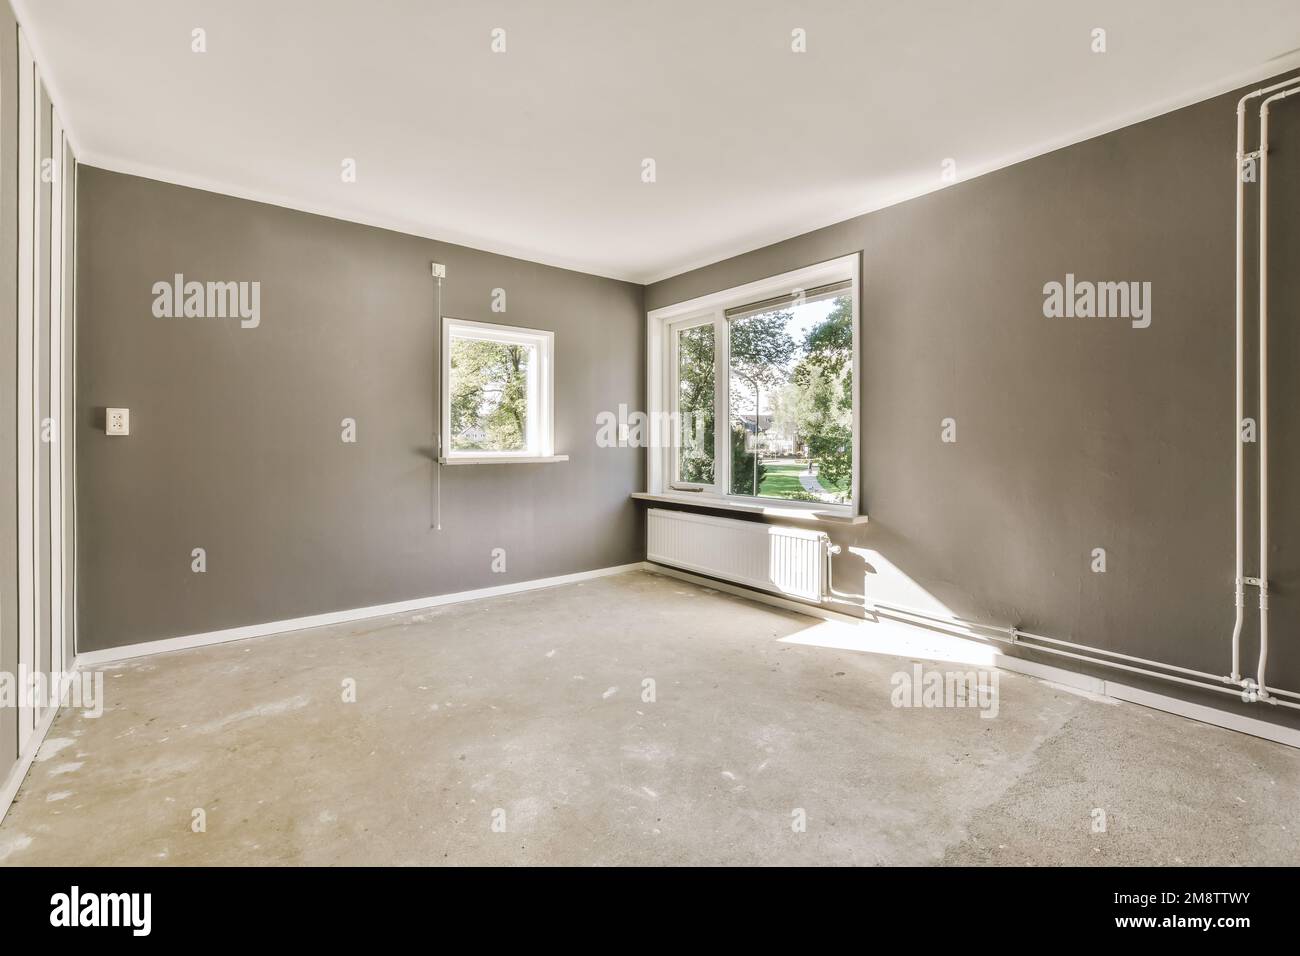 Ein leerer Raum mit grauen Wänden und weißen Verzierungen um die Fensterscheiben auf der linken Seite des Raums Stockfoto